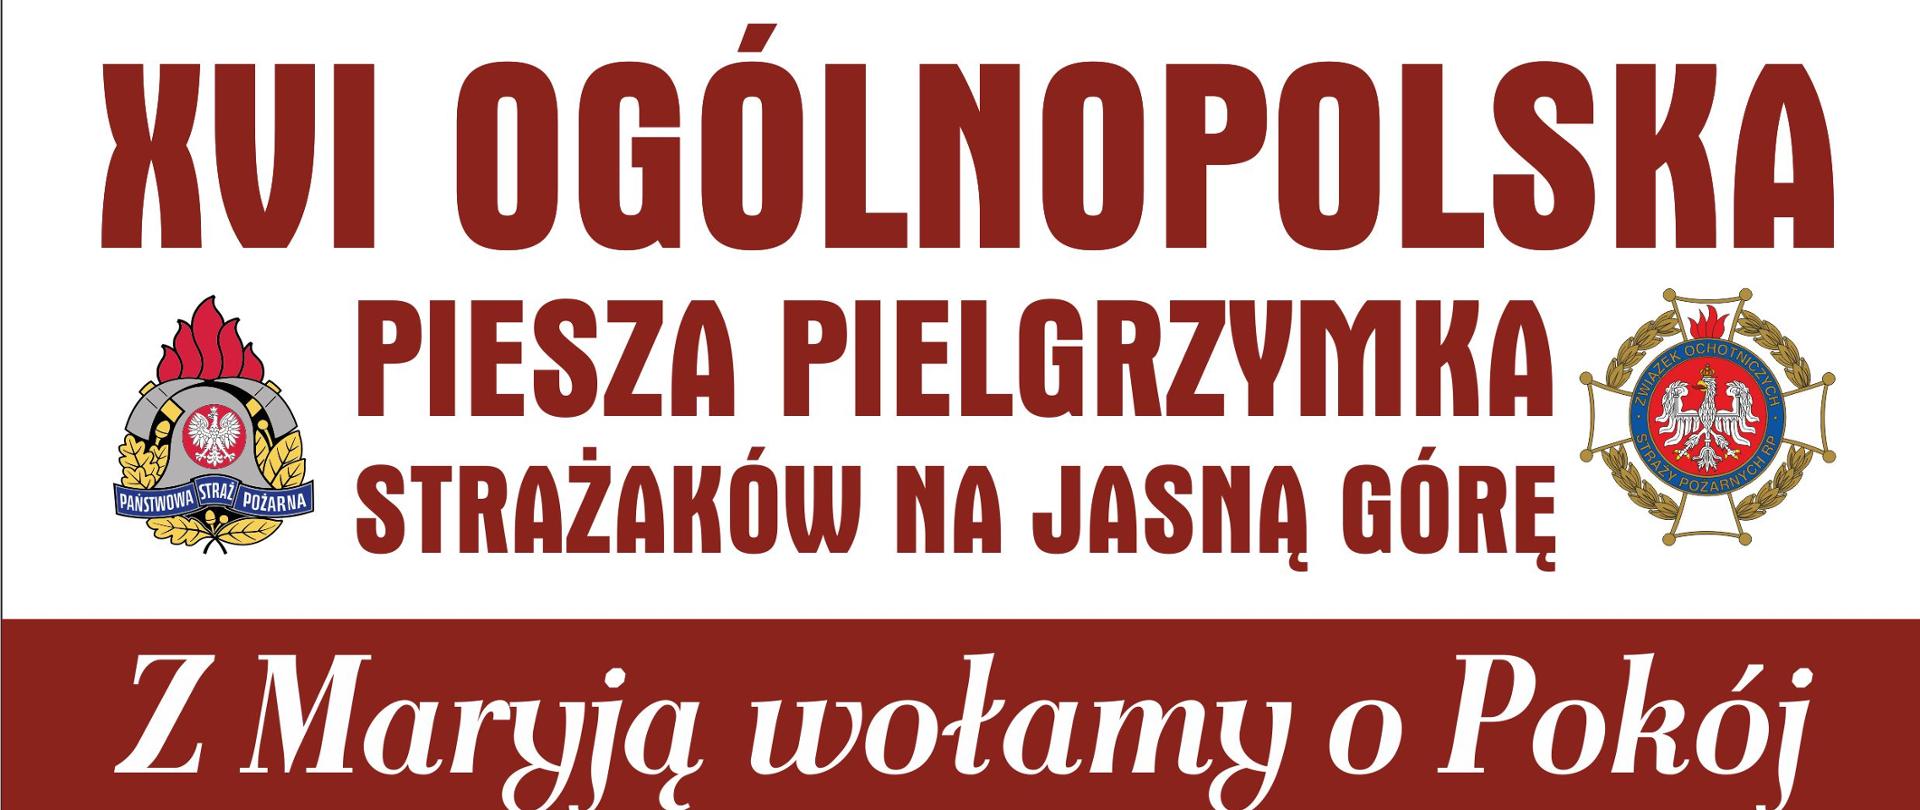 XVI Ogólnopolska Piesza Pielgrzymka Strażaków na Jasną Górę - 05 -14 sierpnia 2022